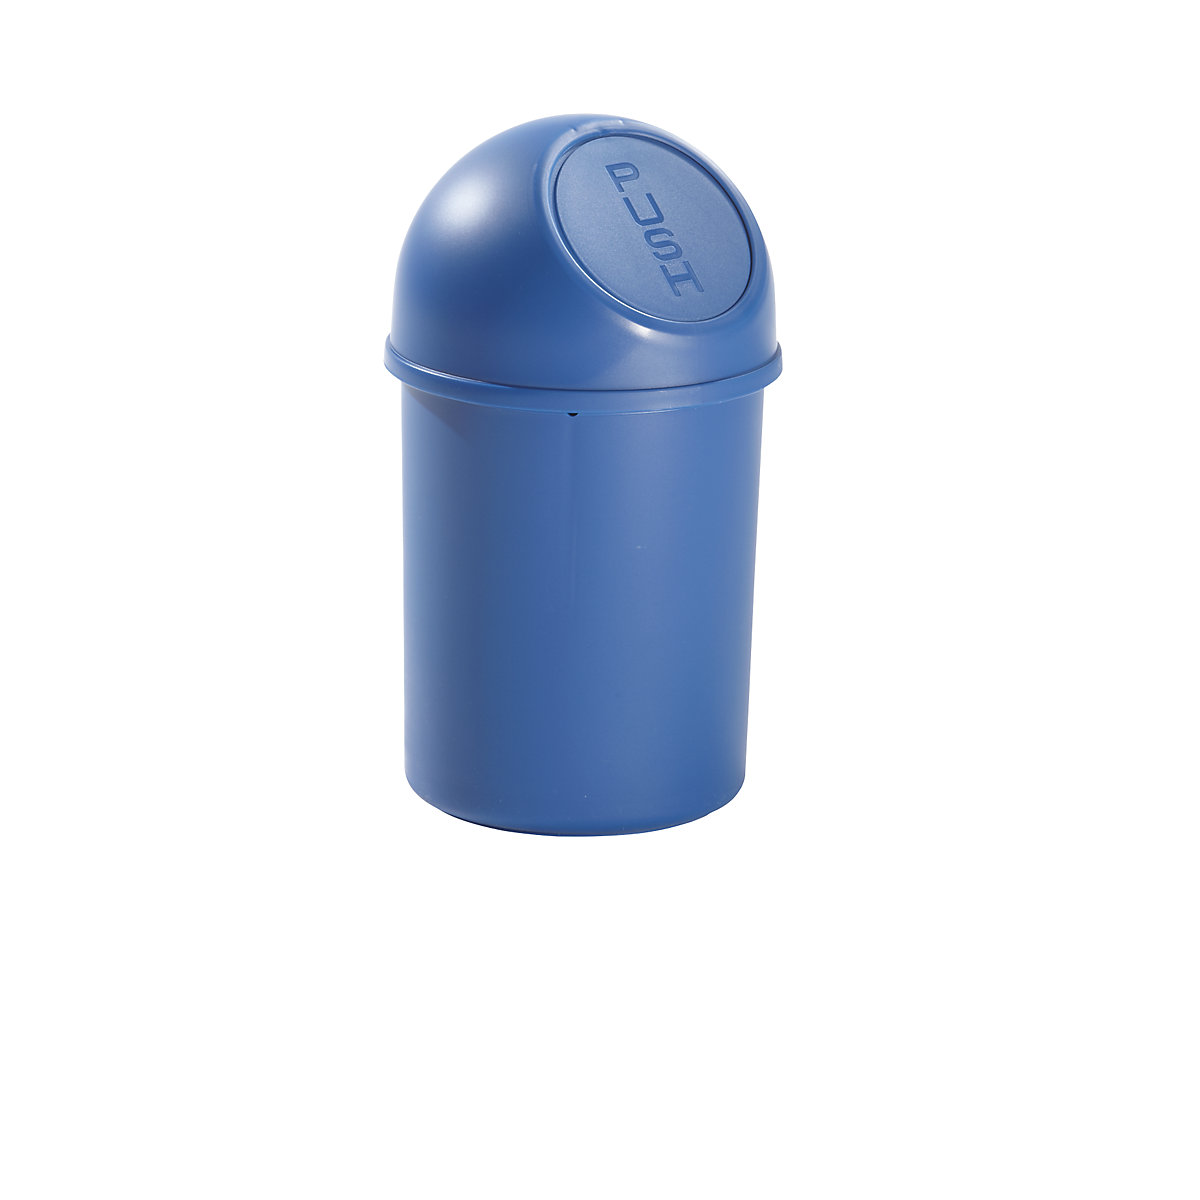 helit – Samozavírací nádoba na odpadky z plastu, objem 6 l, v x Ø 375 x 216 mm, modrá, bal.j. 6 ks